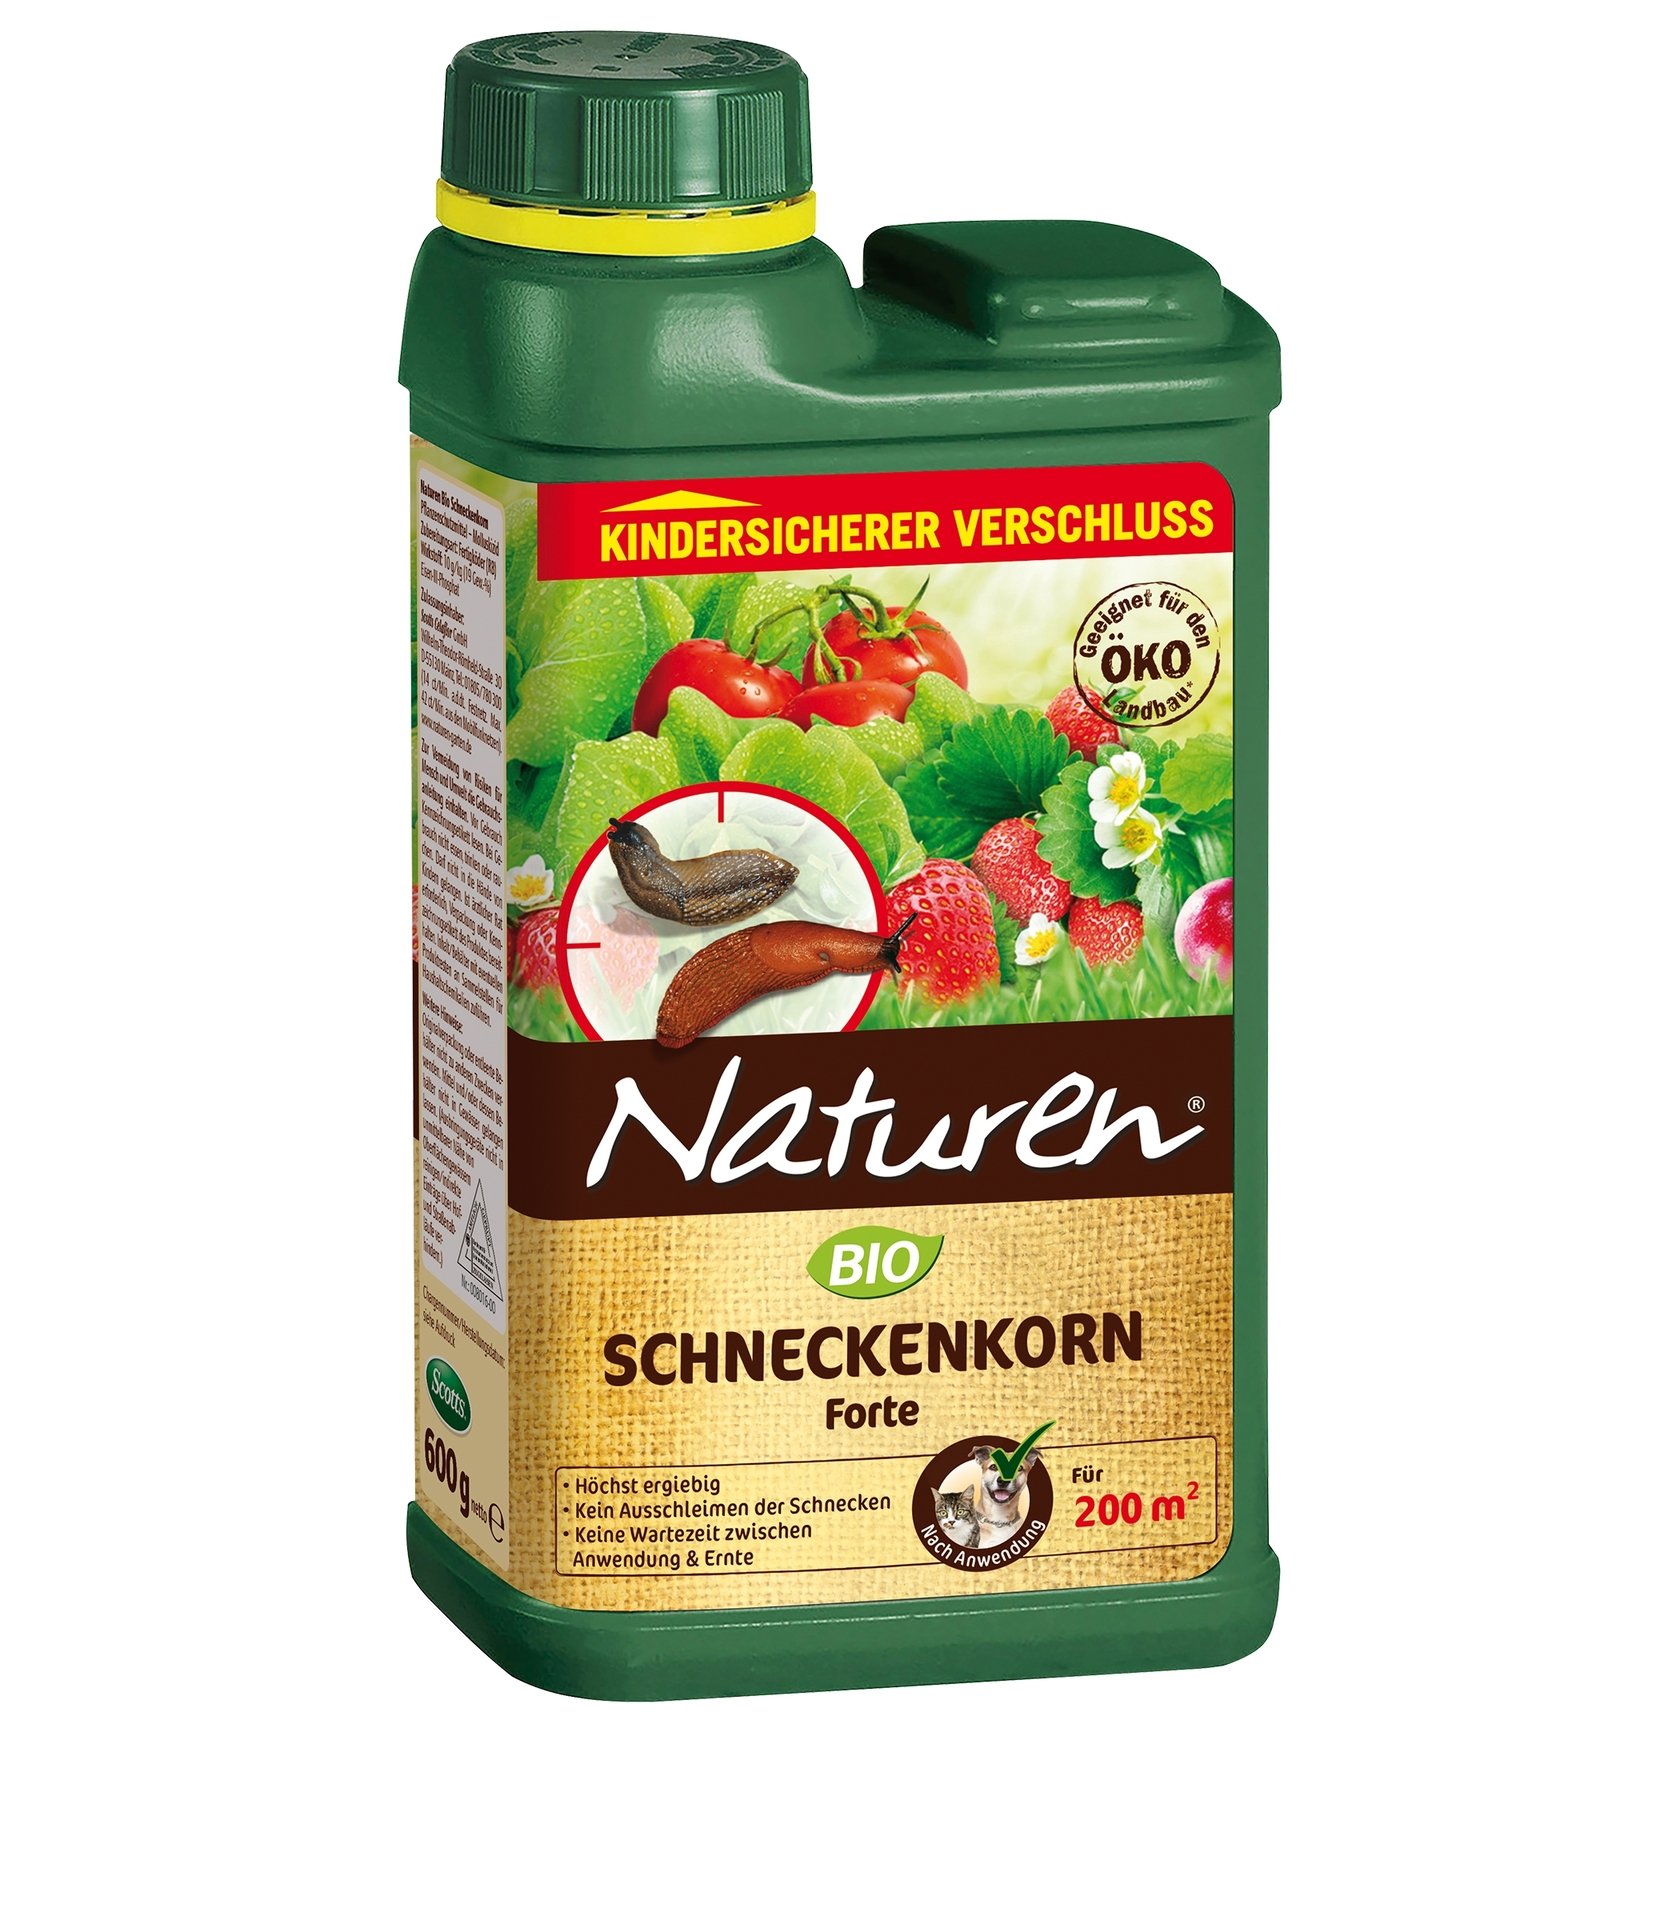 Evergreen Bio Schneckenkorn Forte